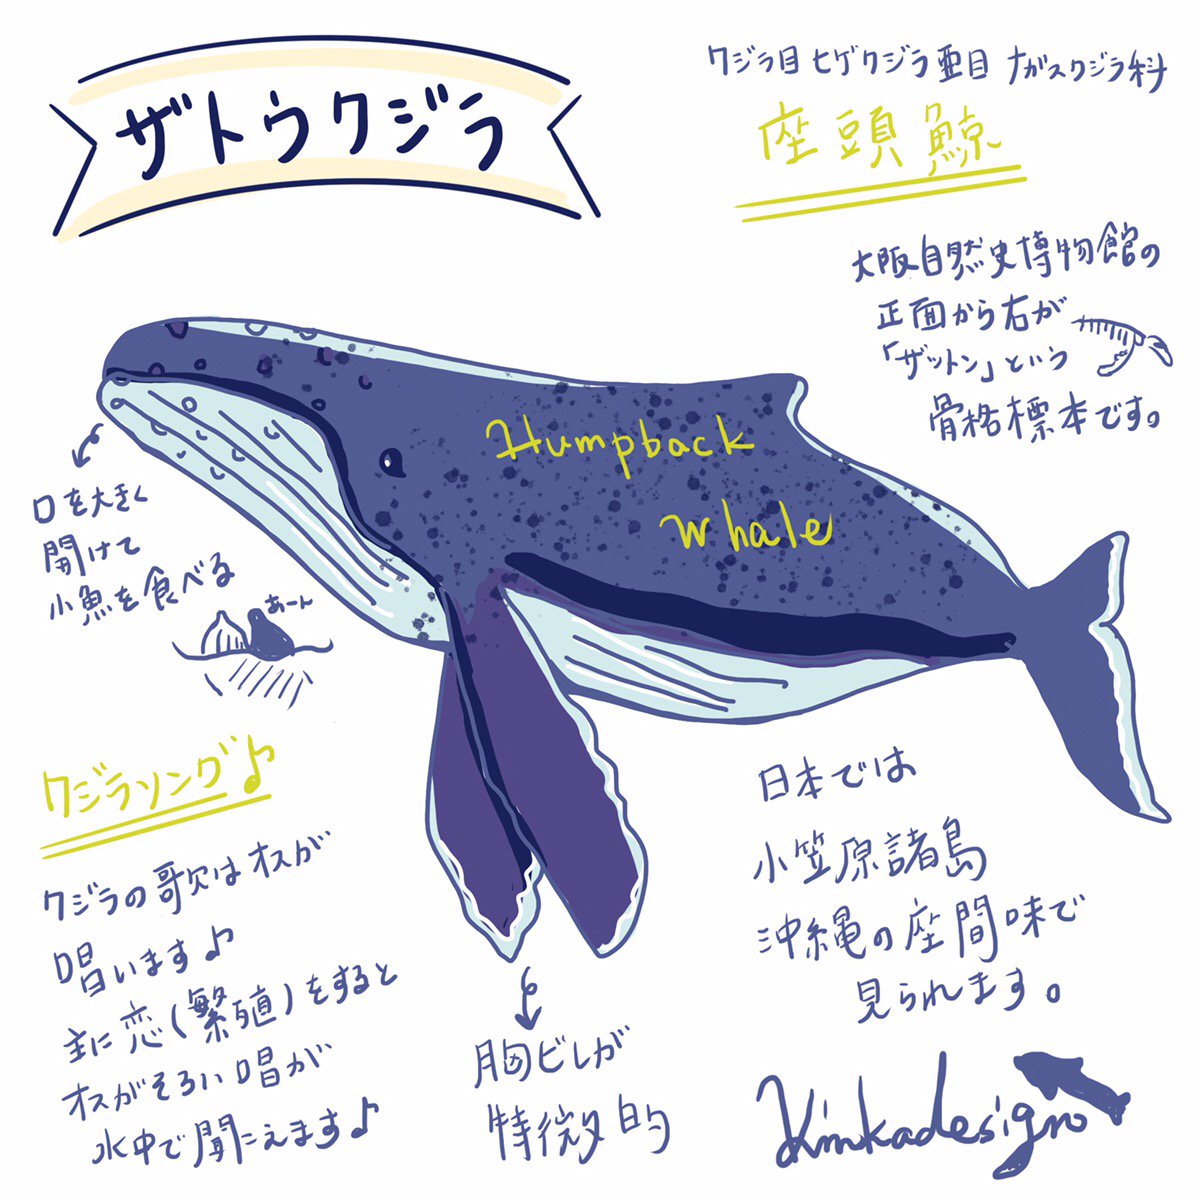 アイ 旅するイルカちゃん By Bluefieldnet Kinkadesign Na Twitteru ザトウクジラ 日本で馴染みがあるザトウクジラ 胸ビレが長いのが特徴です バブルネットフィーディング という泡を吐きながら獲物を囲み取る狩技 というものがある また ジャンプ